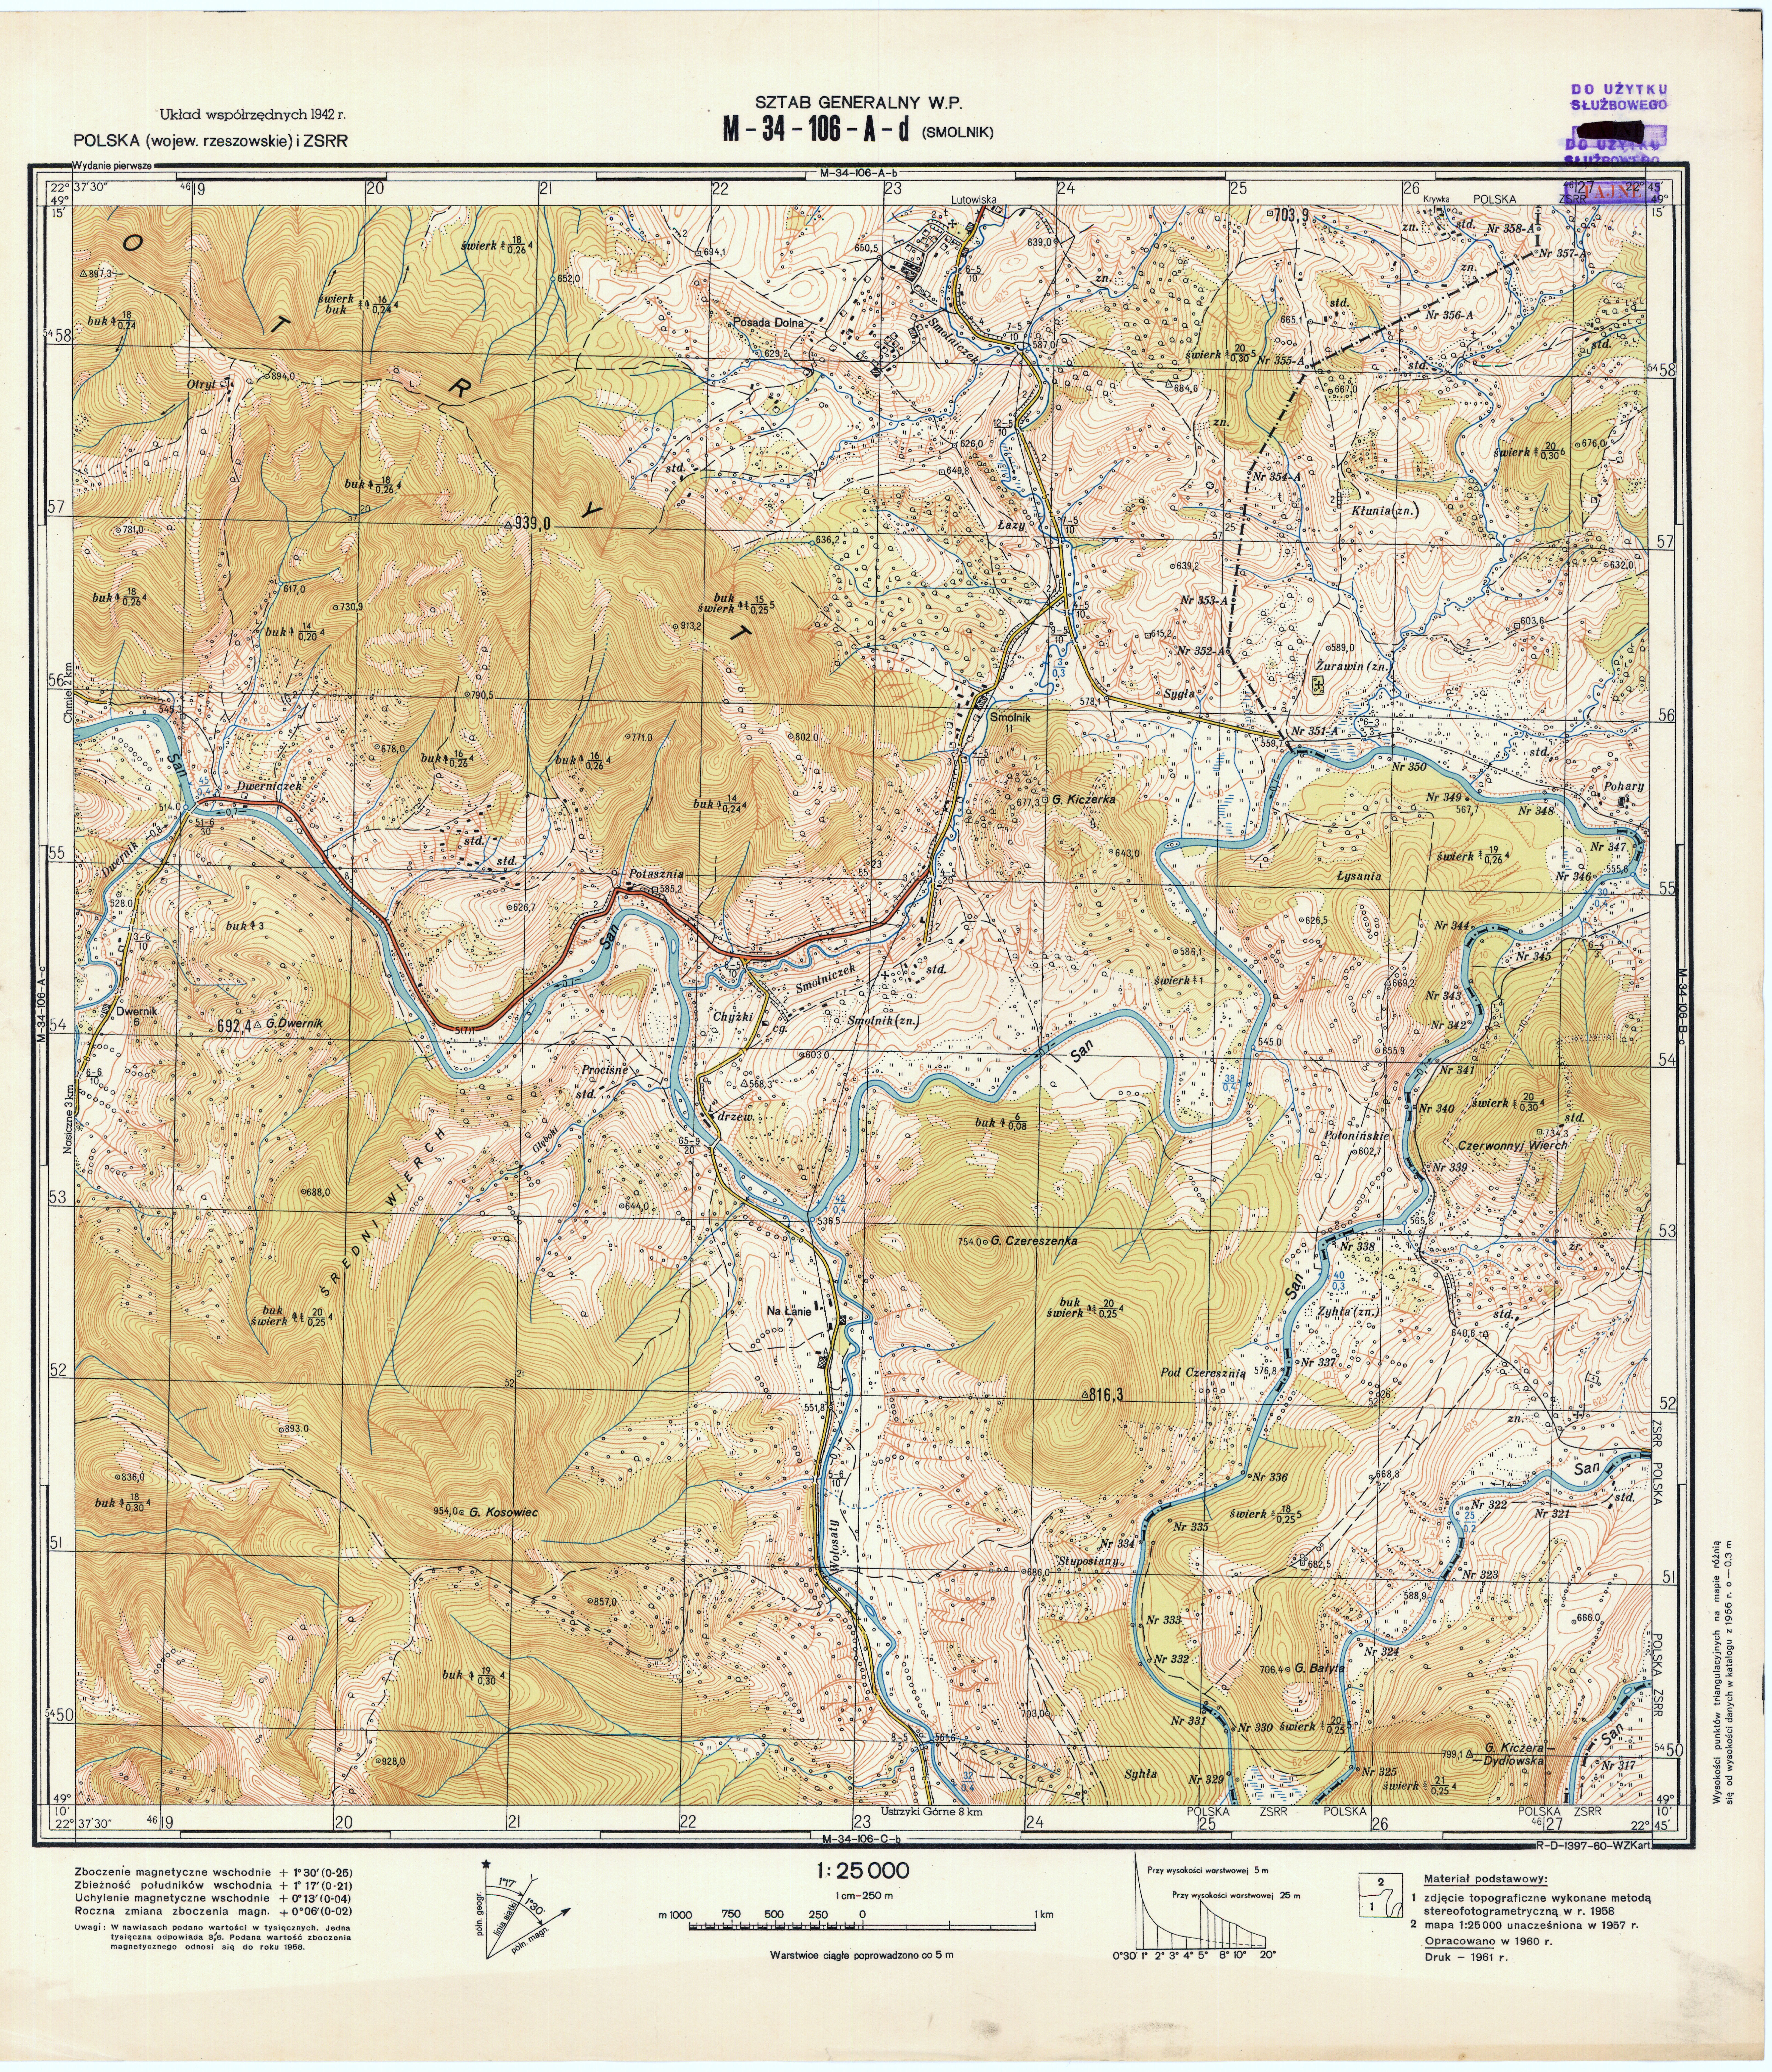 Mapy topograficzne LWP 1_25 000 - M-34-106-A-d_SMOLNIK_1961.jpg